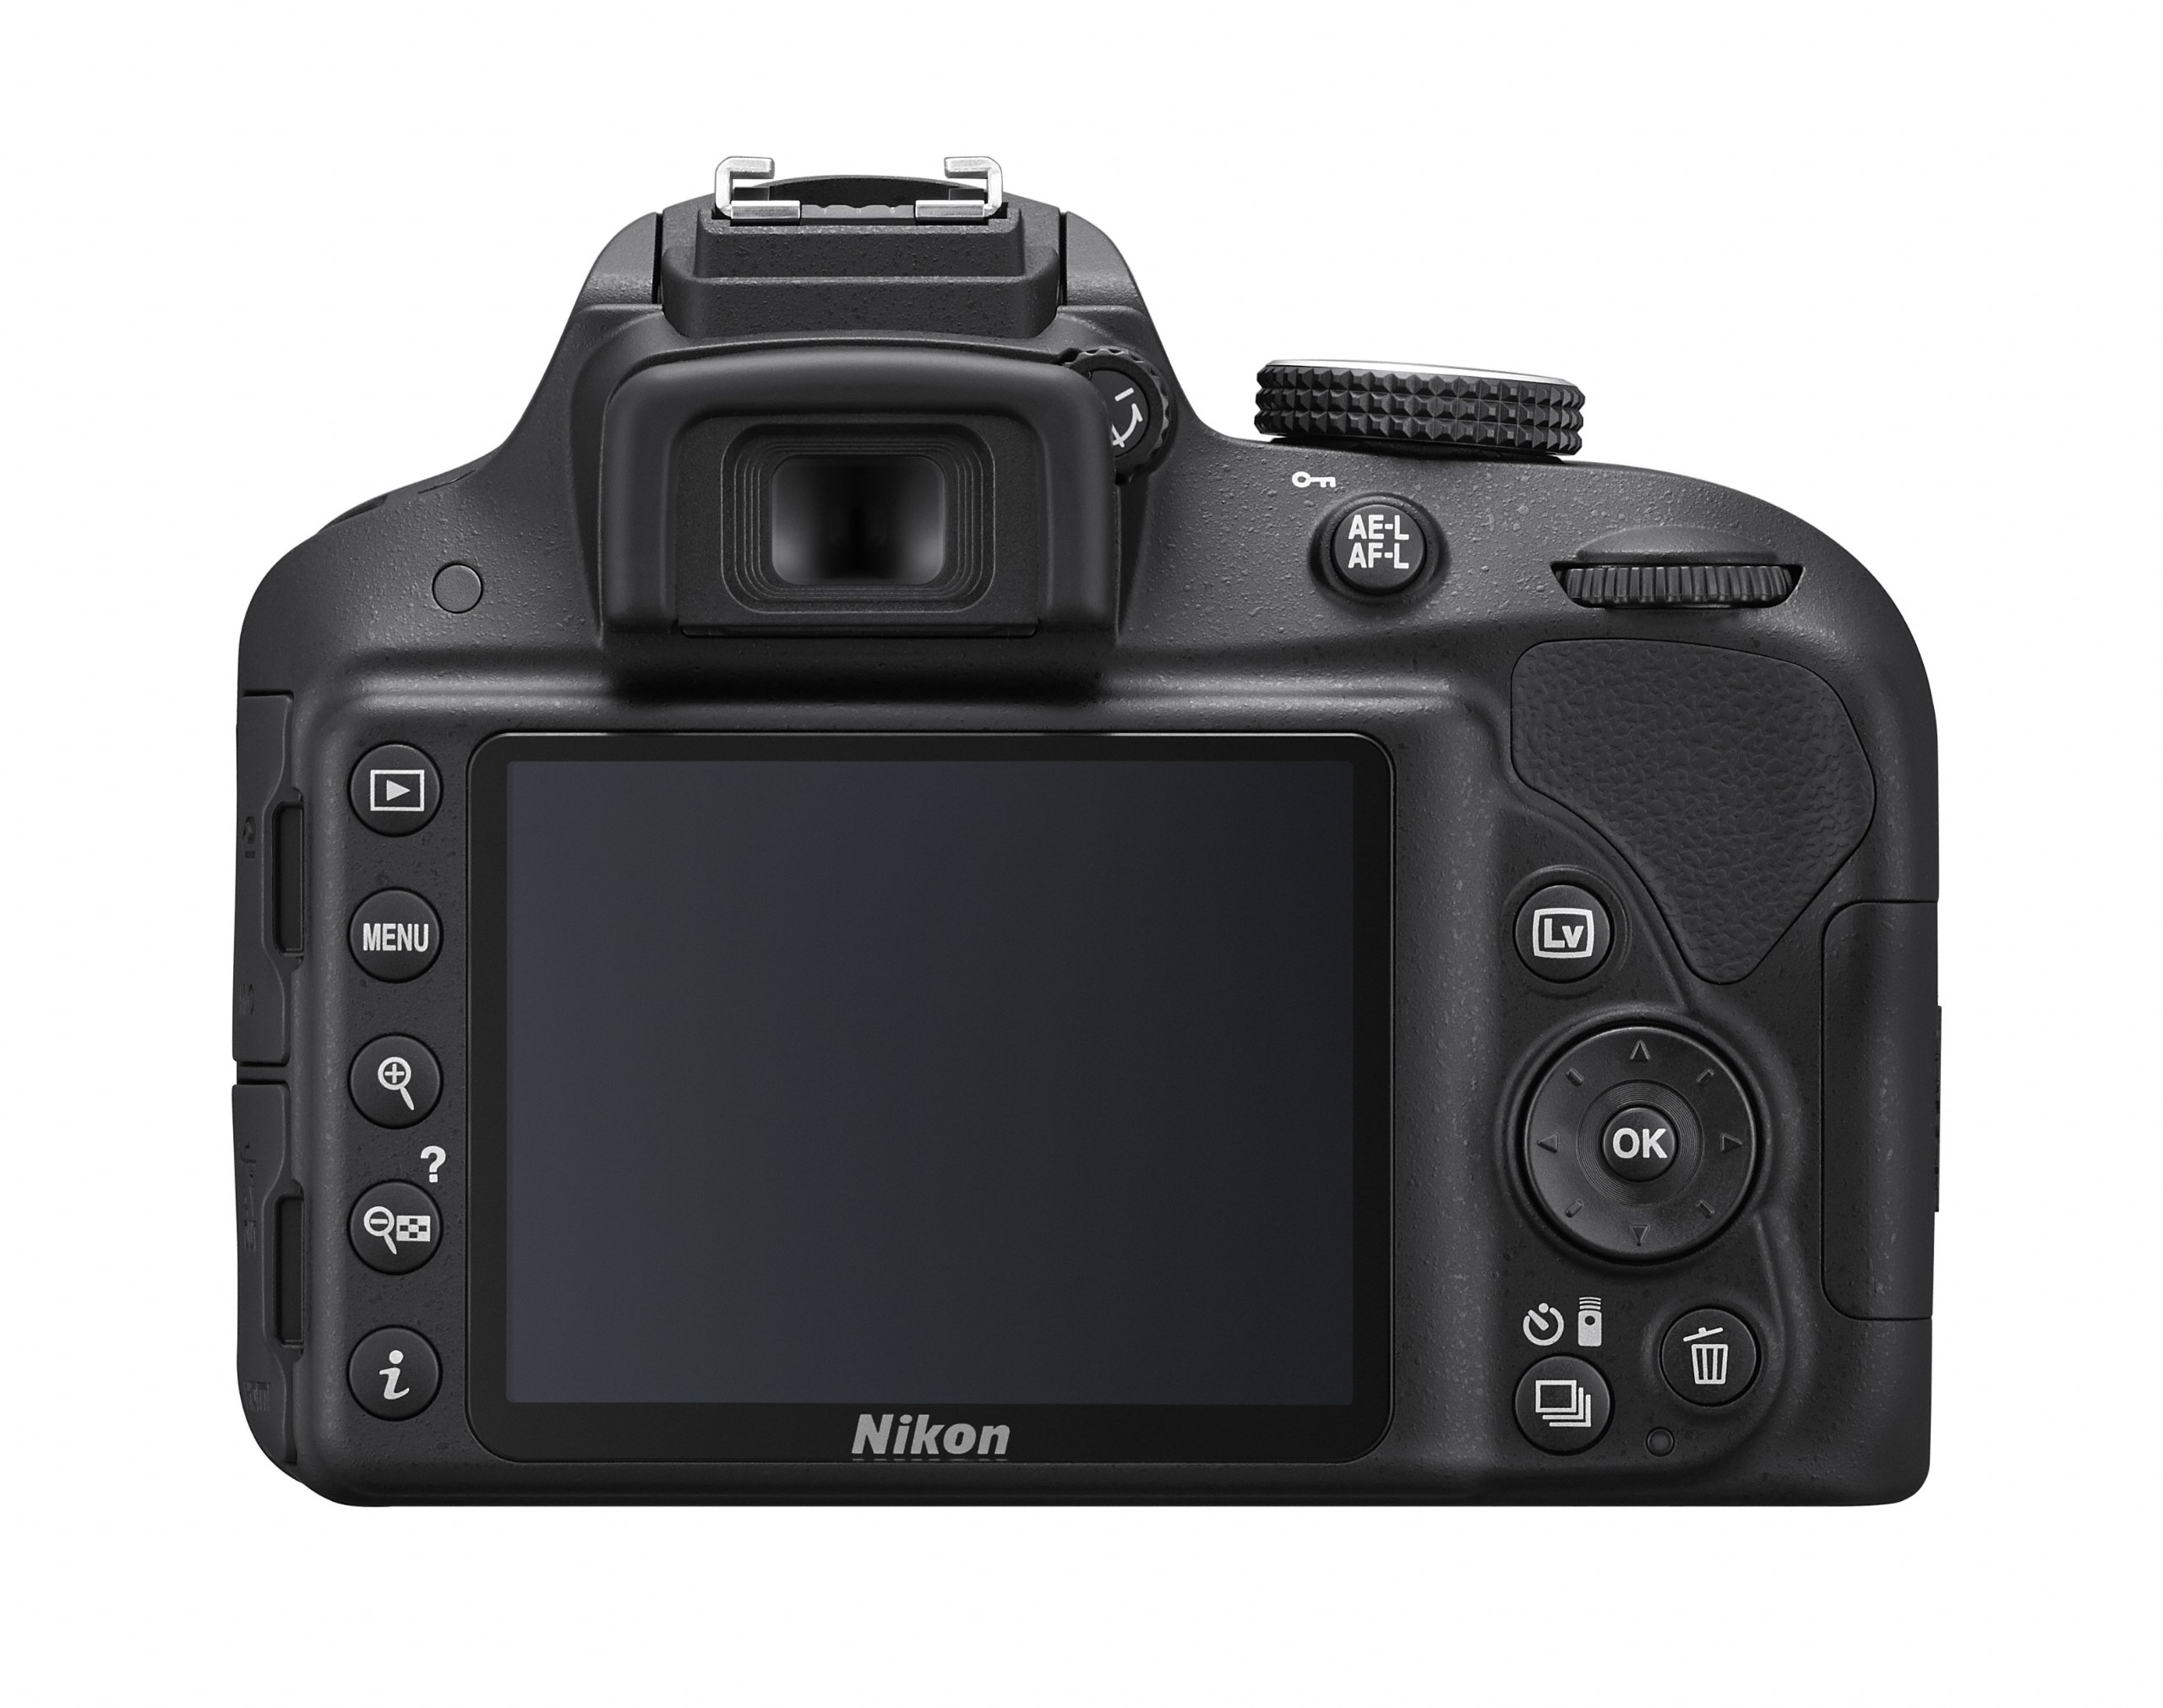 Nikon D3300 24.2 MP CMOS Digital SLR with Auto Focus-S DX Nikkor 18-55mm f/3.5-5.6G VR II Zoom Lens (Black)